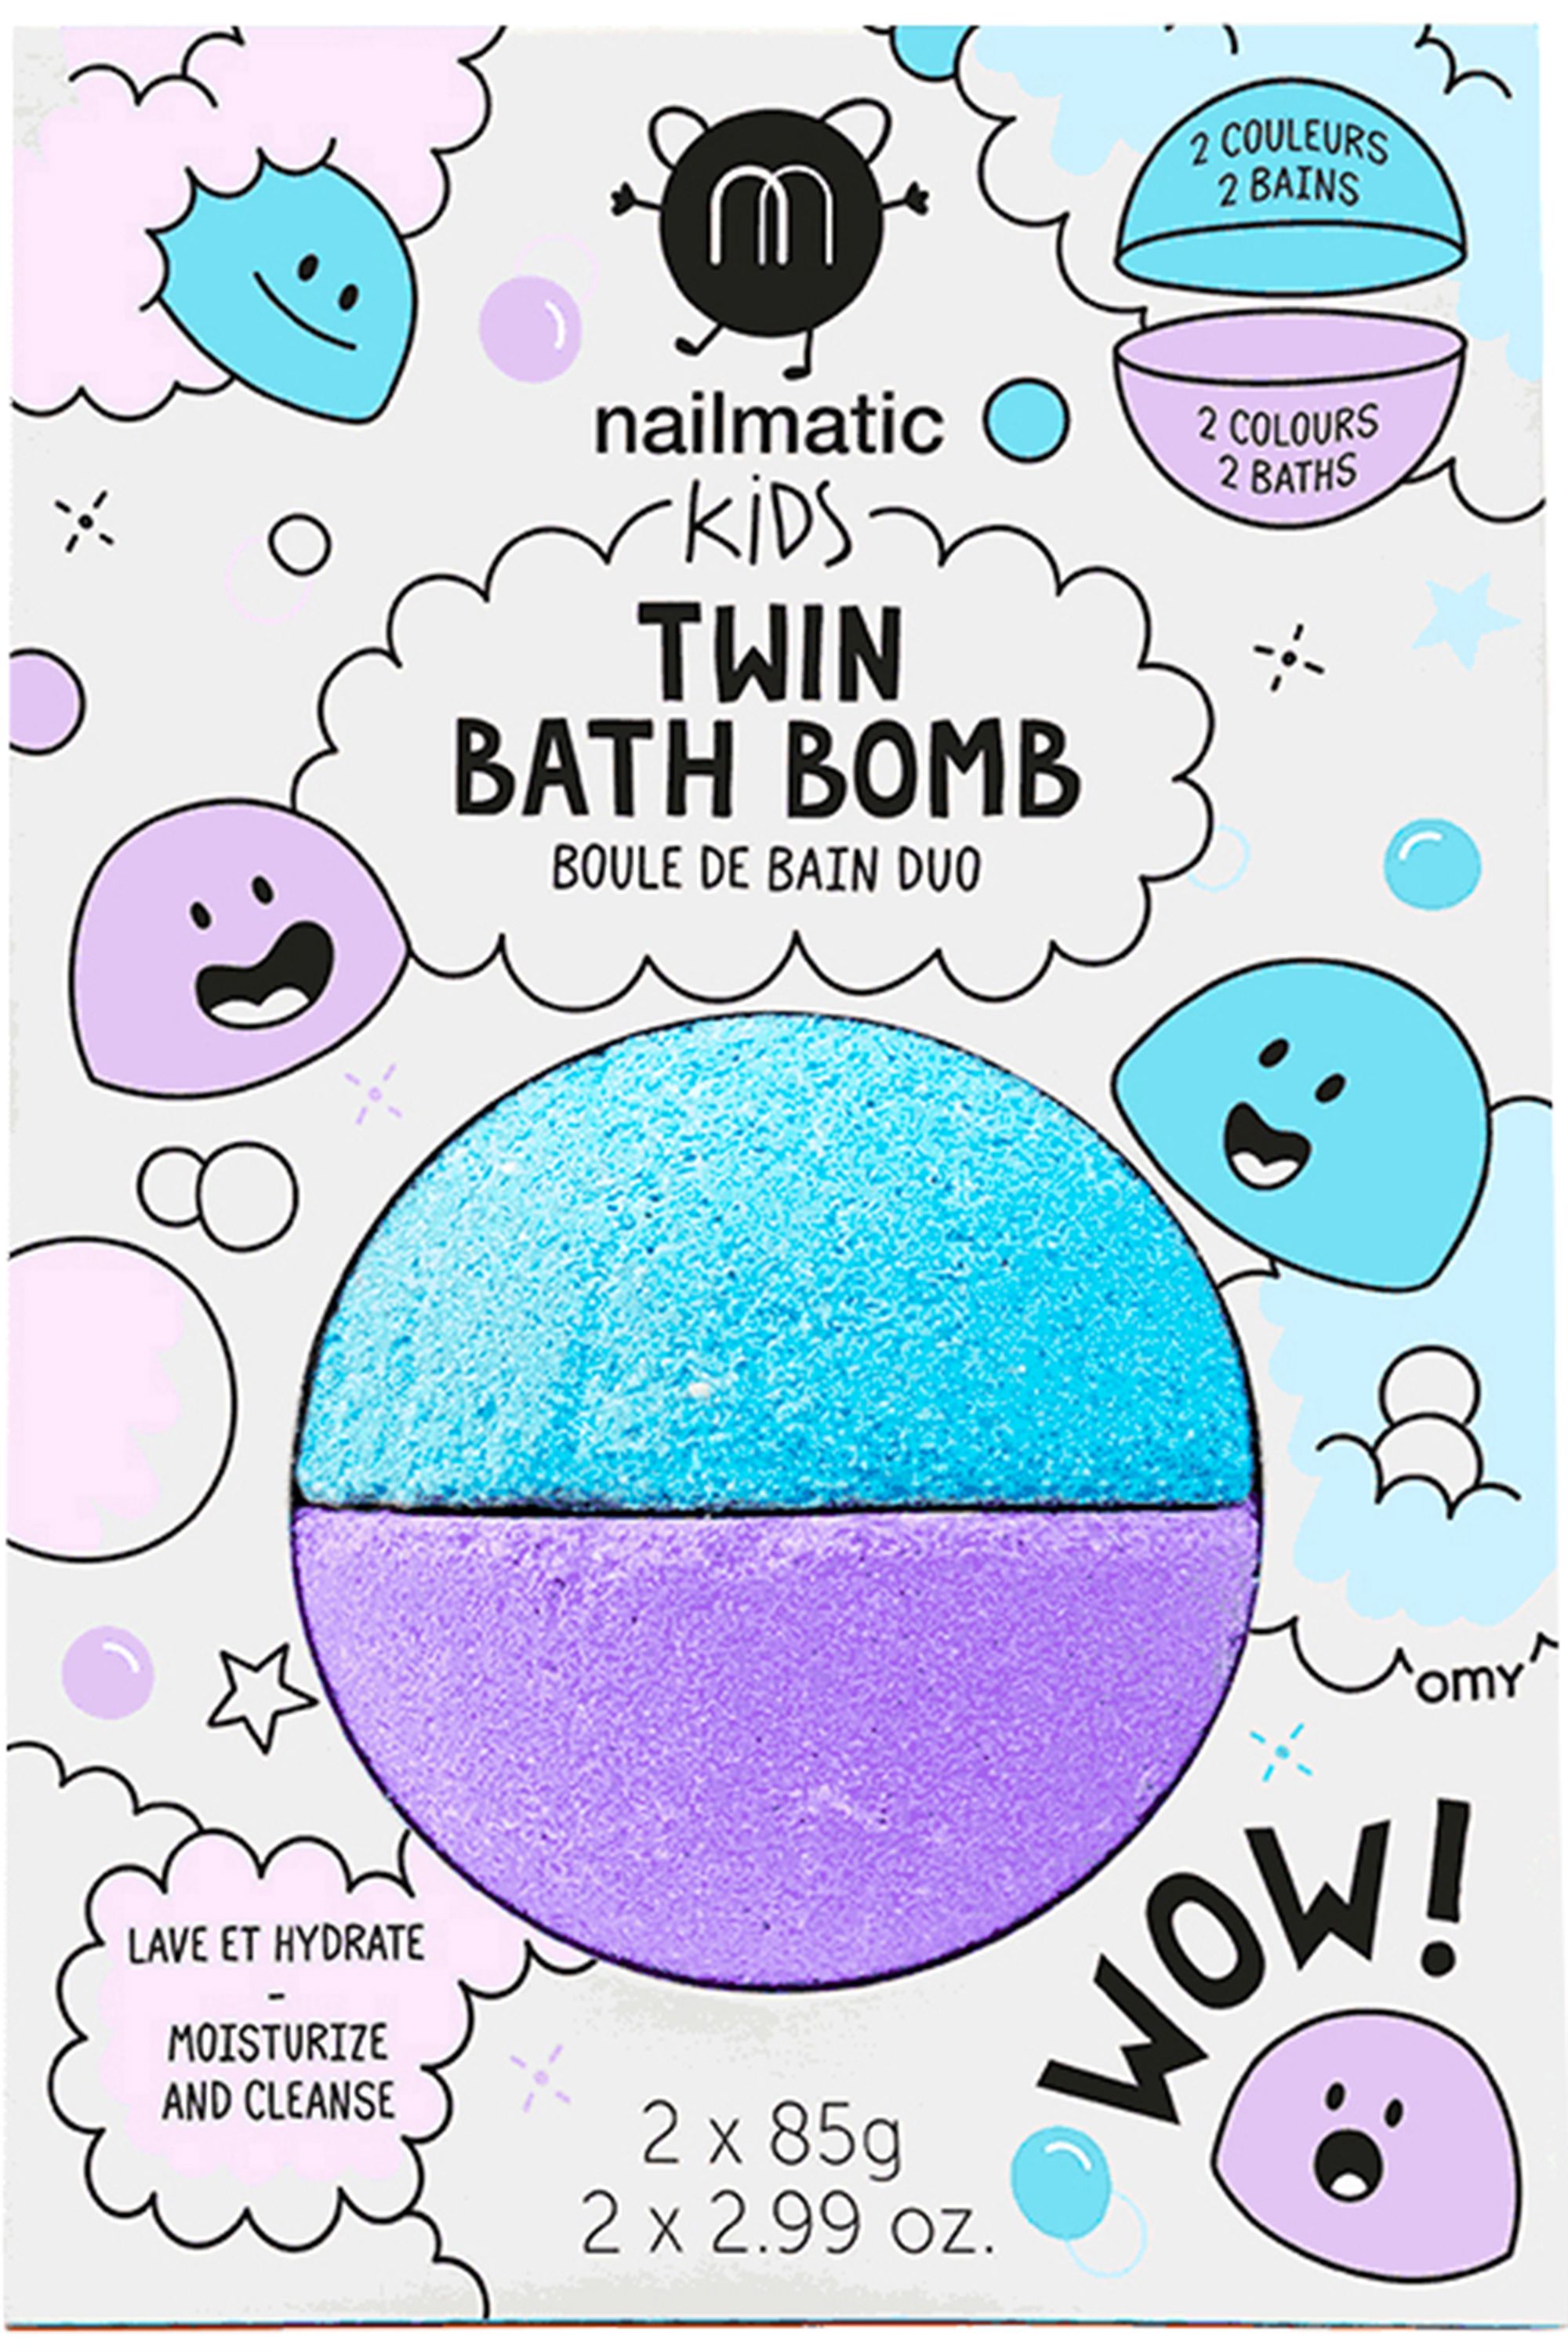 Boule bain duo pour enfant : bleu + violet